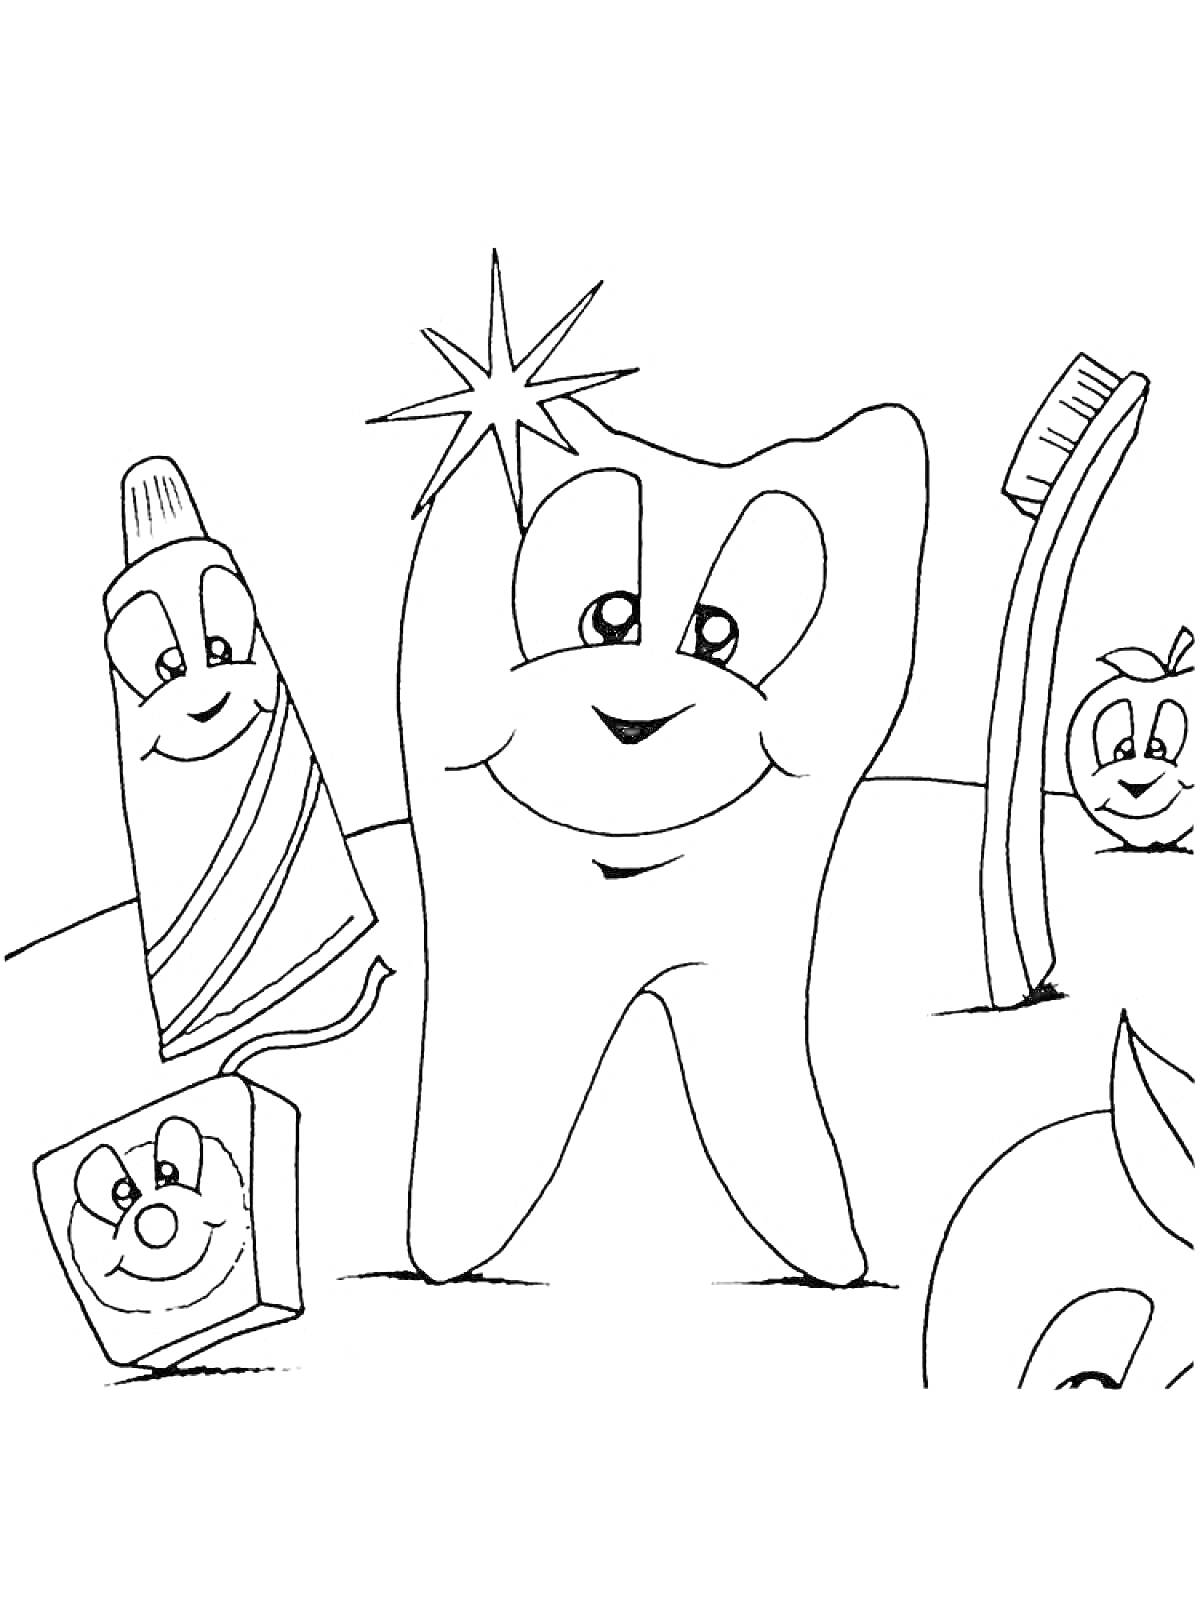 Раскраска Зуб с зубной пастой, зубной щеткой и зубной нитью, все элементы с лицами